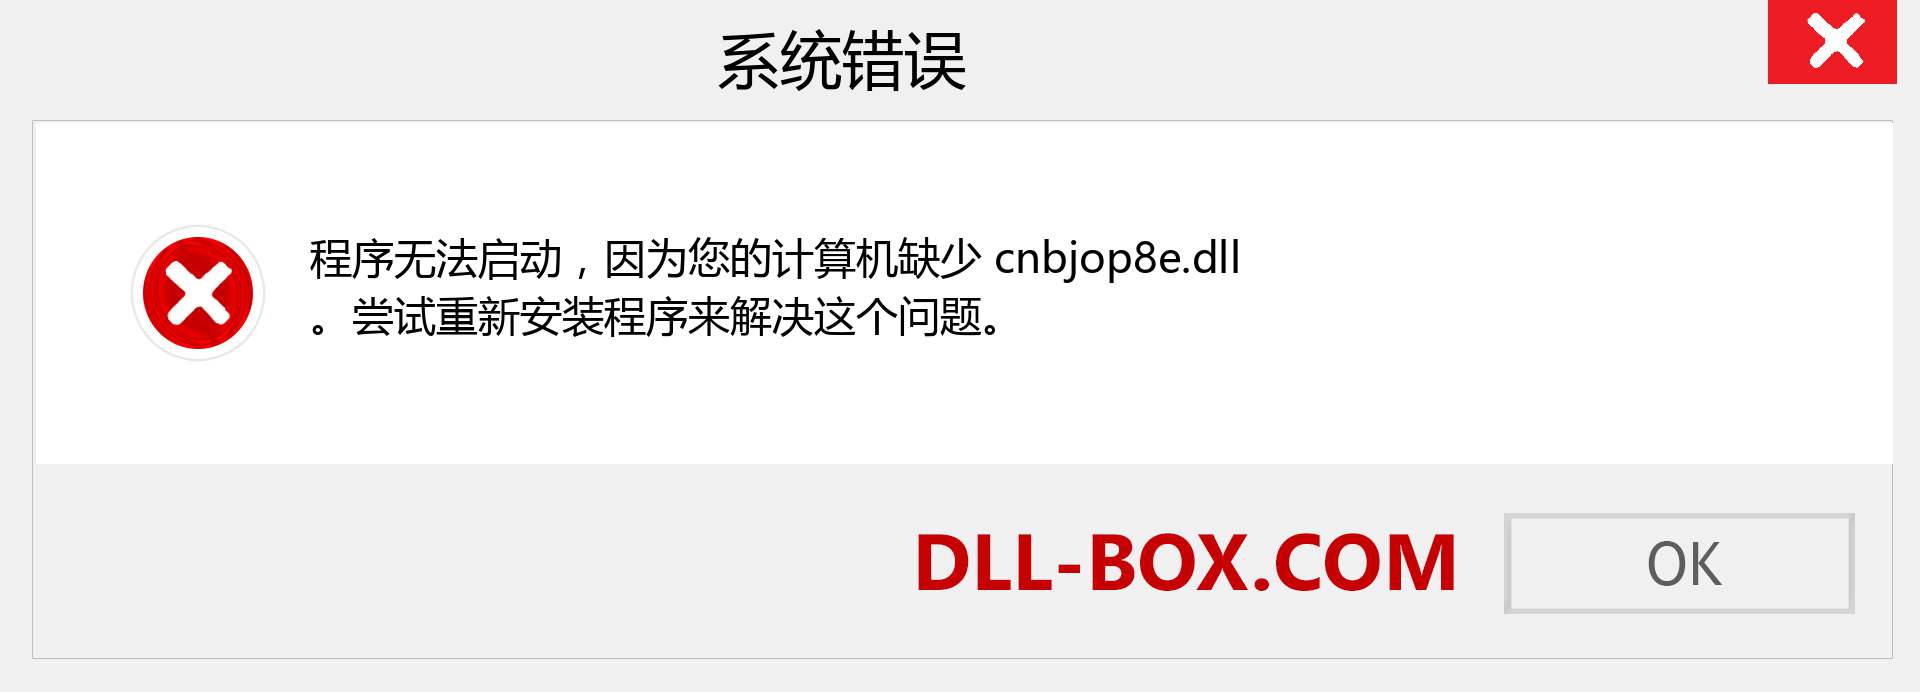 cnbjop8e.dll 文件丢失？。 适用于 Windows 7、8、10 的下载 - 修复 Windows、照片、图像上的 cnbjop8e dll 丢失错误